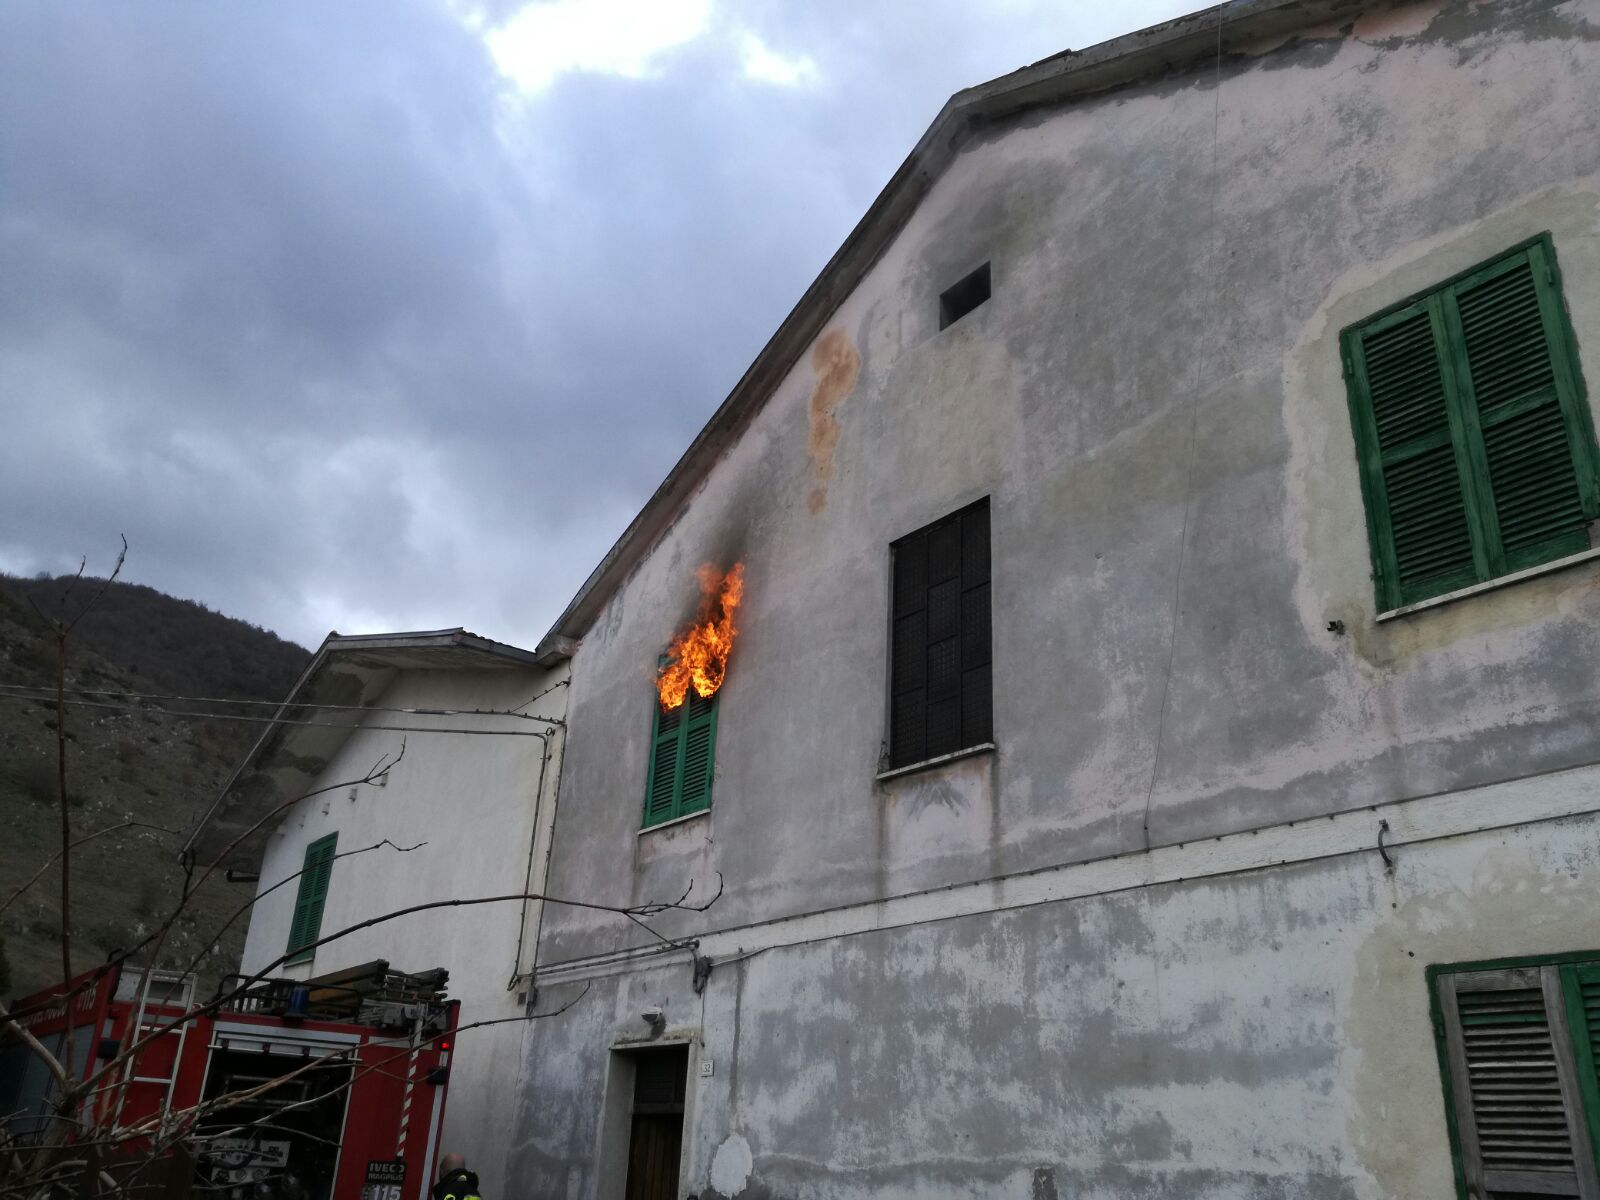 Abitazione in fiamme, tragedia sfiorata a Capistrello